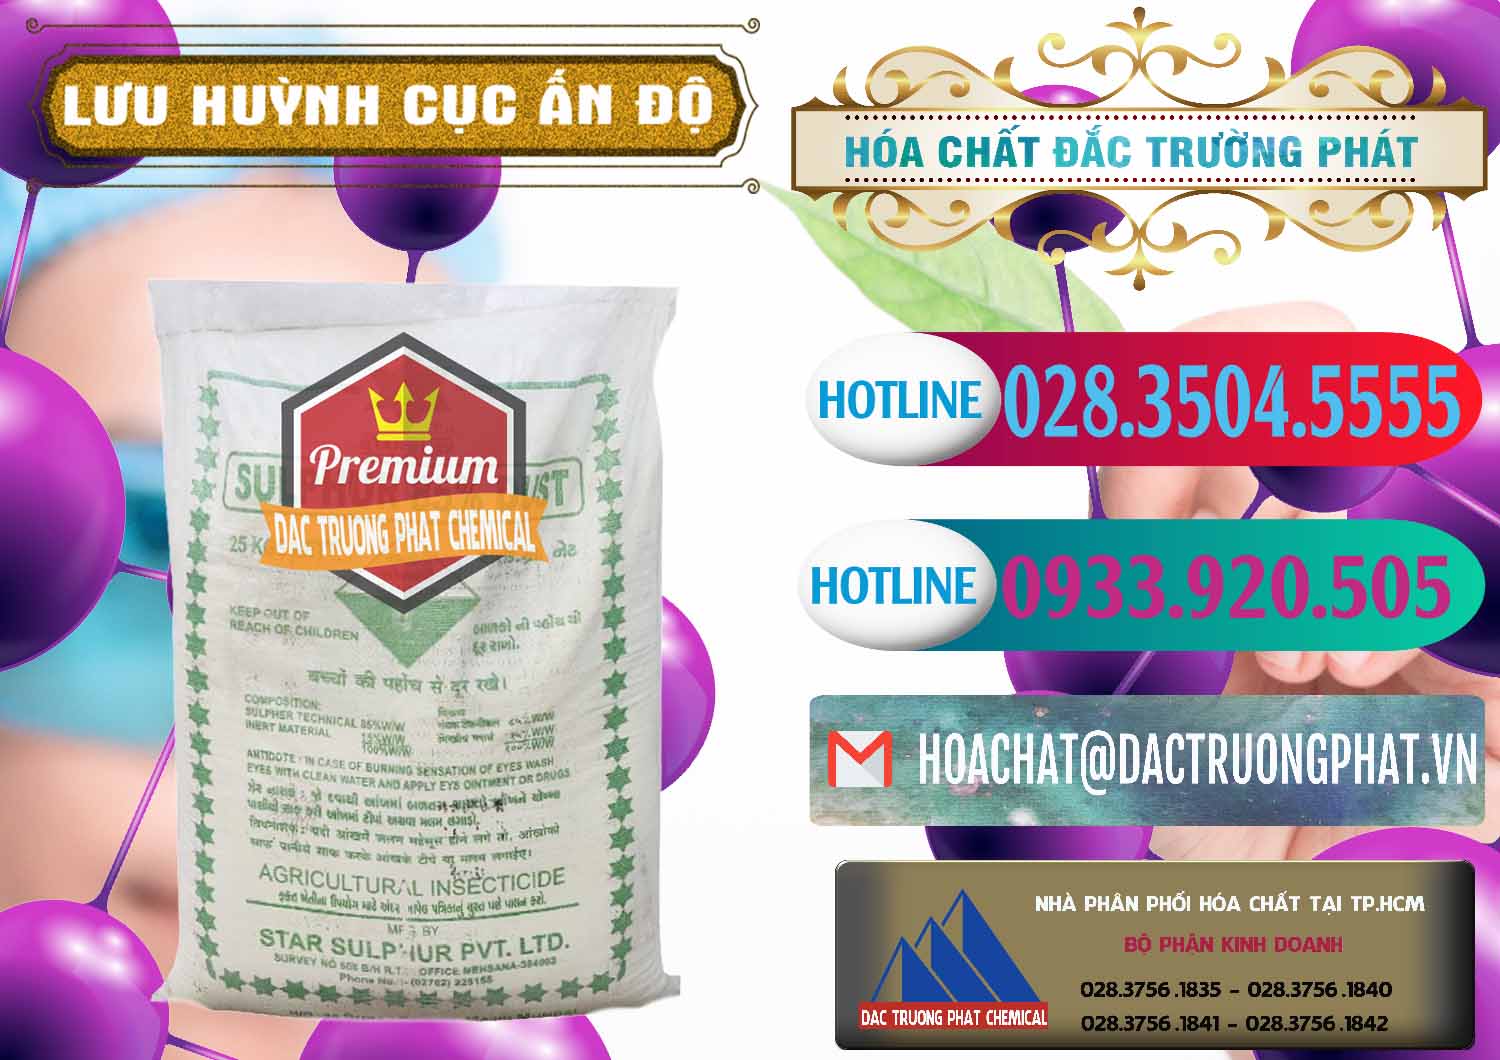 Nơi bán và phân phối Lưu huỳnh Cục - Sulfur Ấn Độ India - 0348 - Nơi chuyên cung cấp và kinh doanh hóa chất tại TP.HCM - truongphat.vn